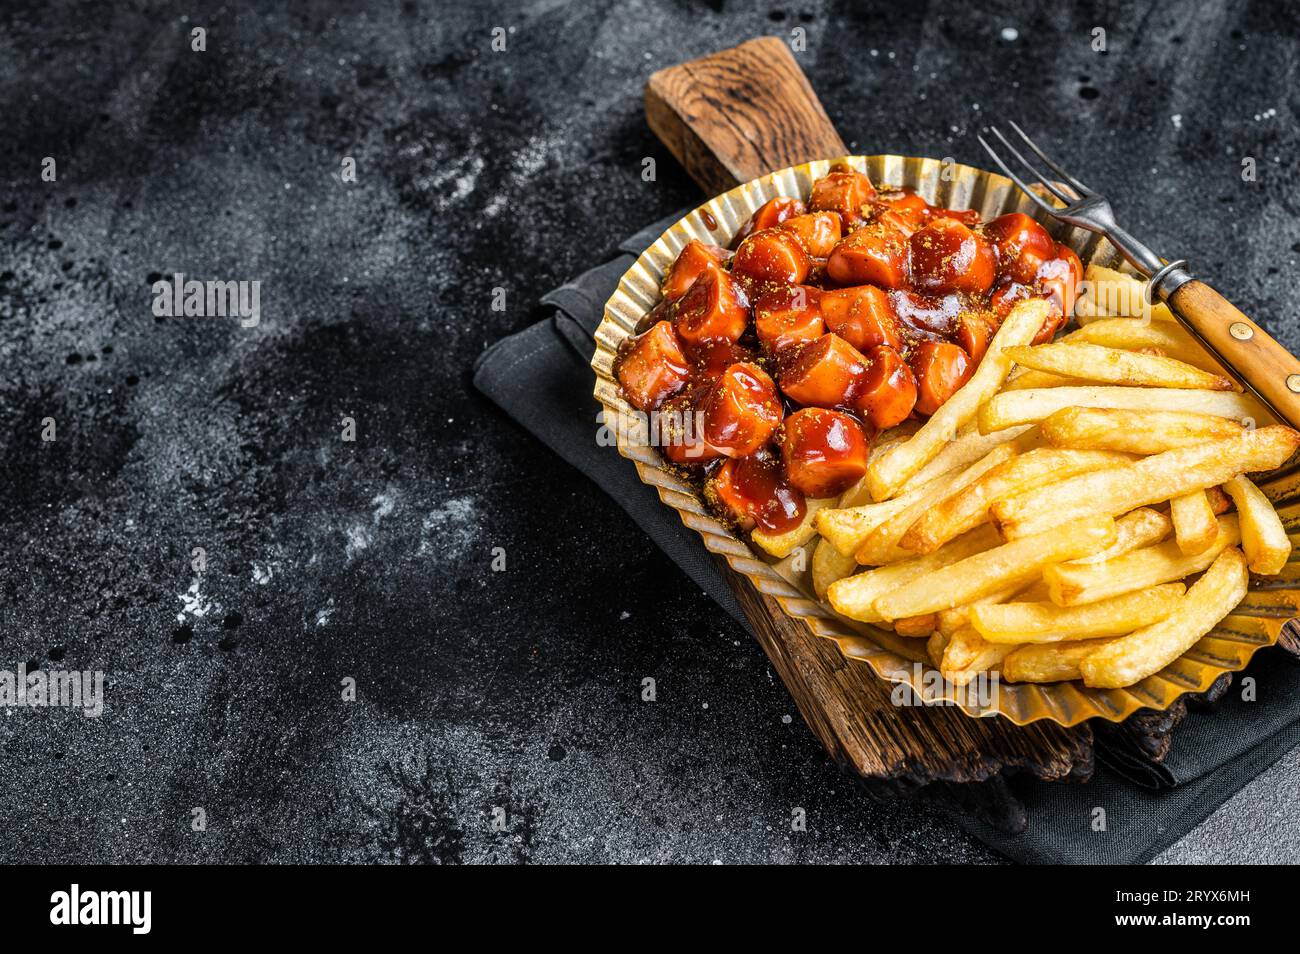 Currywurst allemand avec frites servies dans une plaque d'acier. Fond noir. Vue de dessus. Espace de copie. Banque D'Images